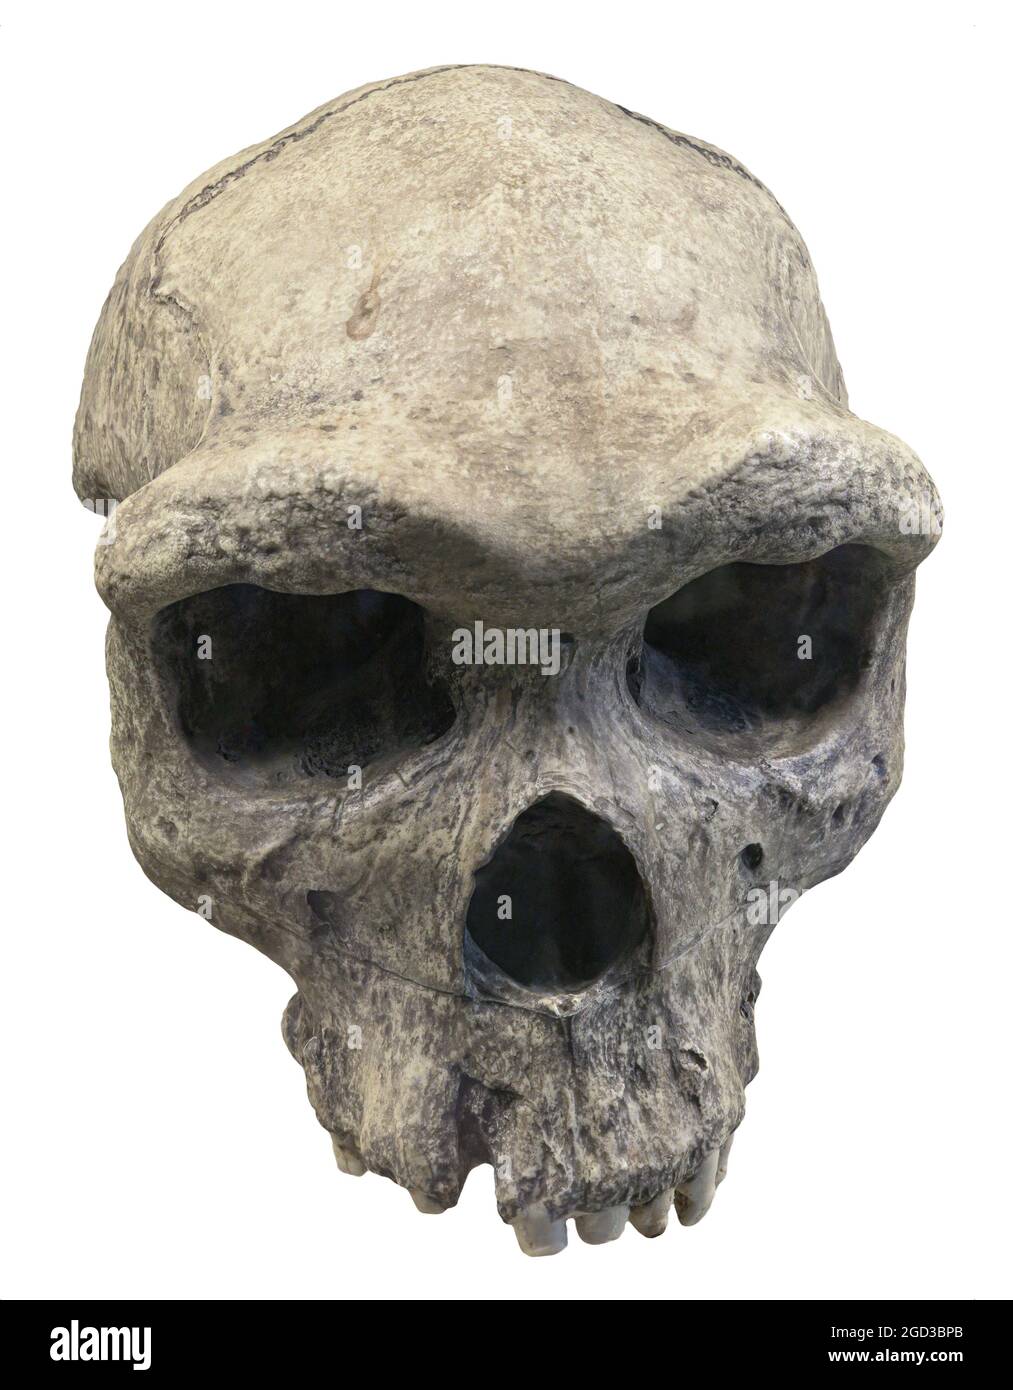 Der Schädel des Homo erectus dubois ist eine ausgestorbene Spezies eines archaischen Menschen aus dem Pleistozän Stockfoto